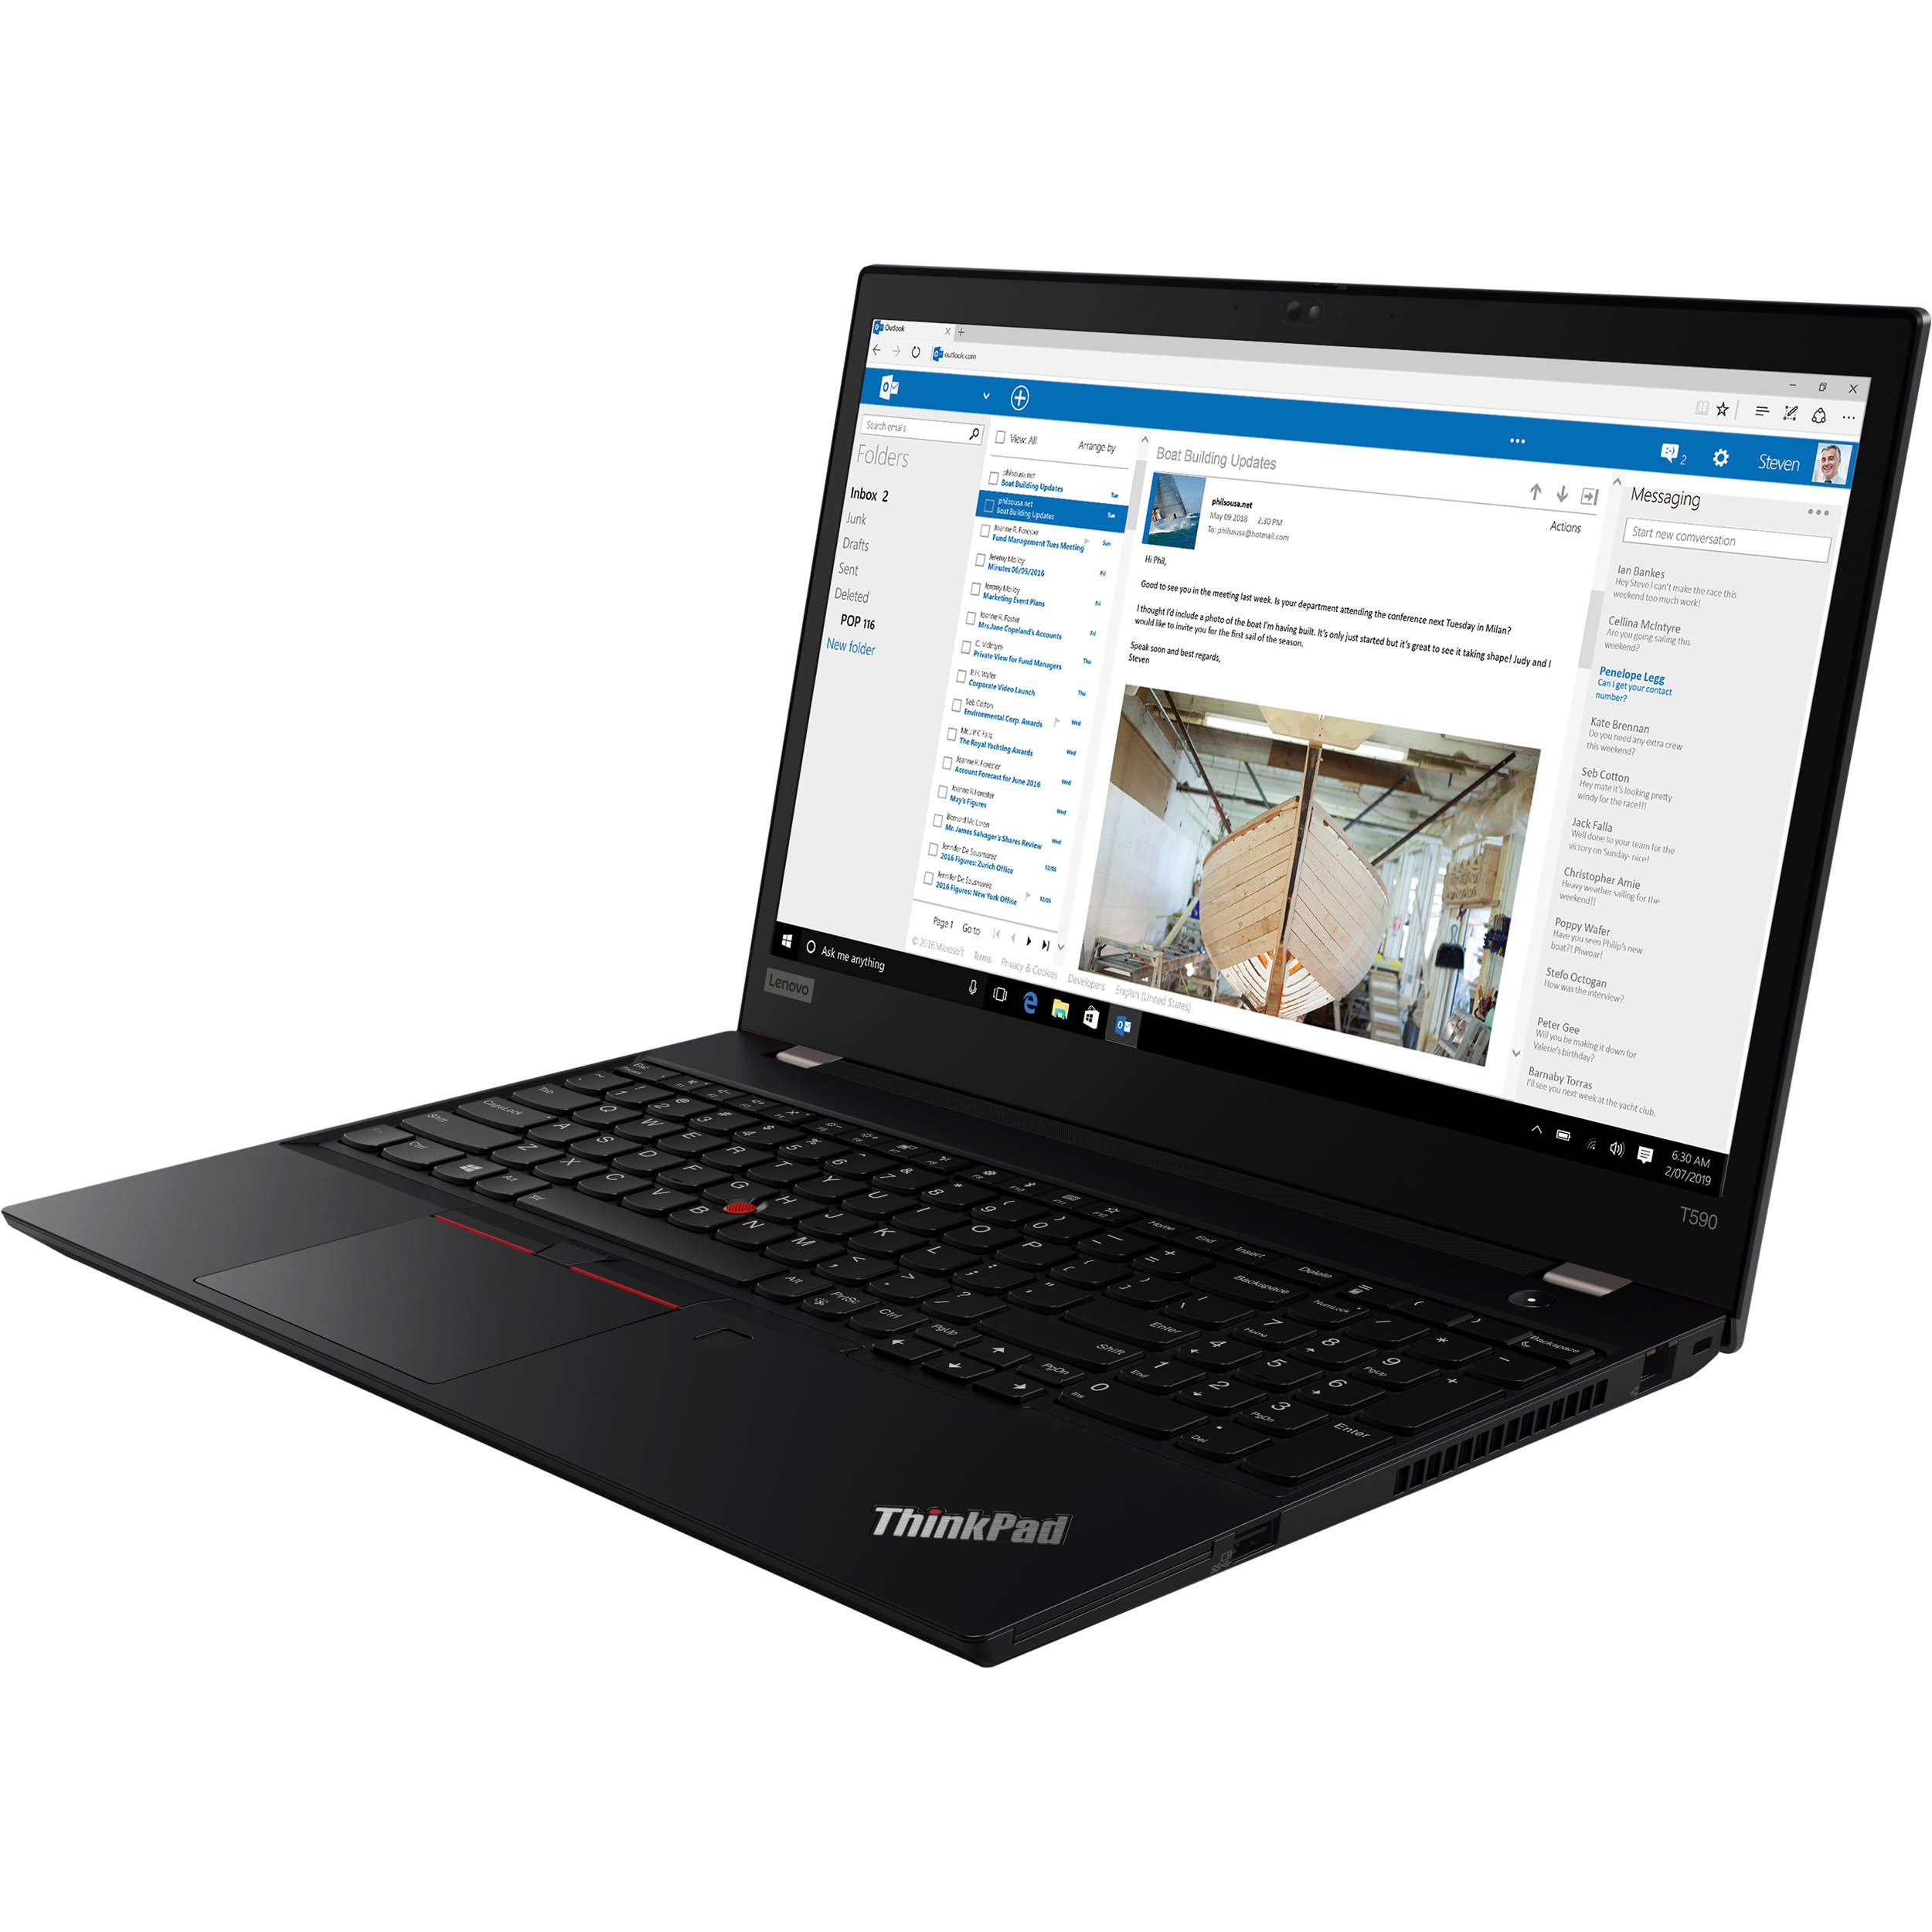 Lenovo ThinkPad T590 15.6" FHD i5-8265U 1.6GHz 8GB 256GB W10P Laptop 20N4001NUS